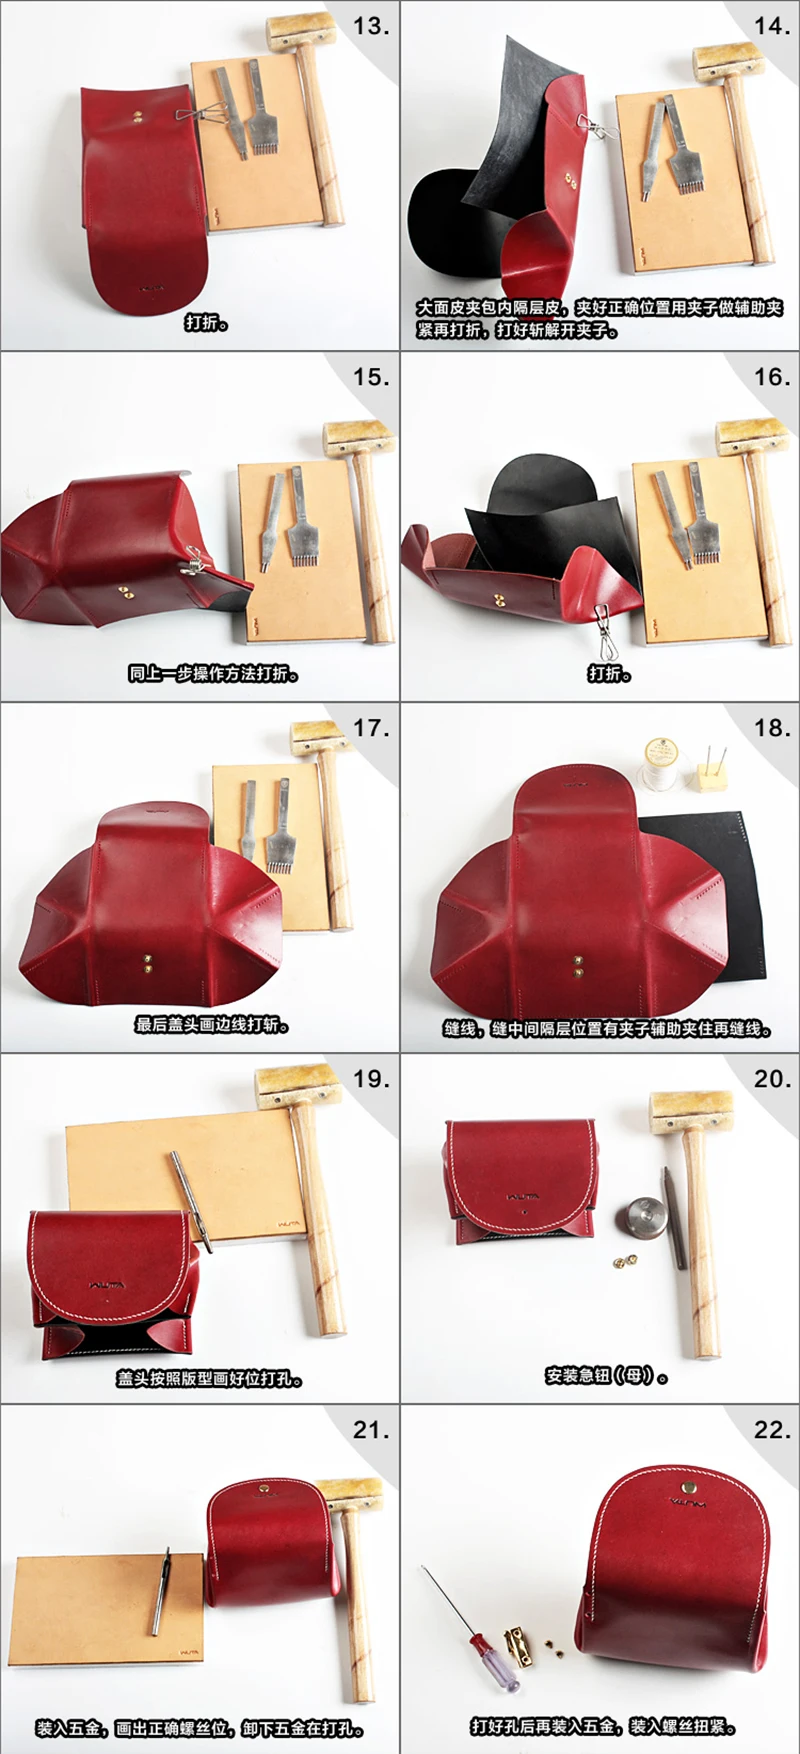 WUTA957 дизайн маленький клатч акриловый шаблон Дамская мини сумка Модель прозрачный кожаный узор набор ремесло режущий инструмент